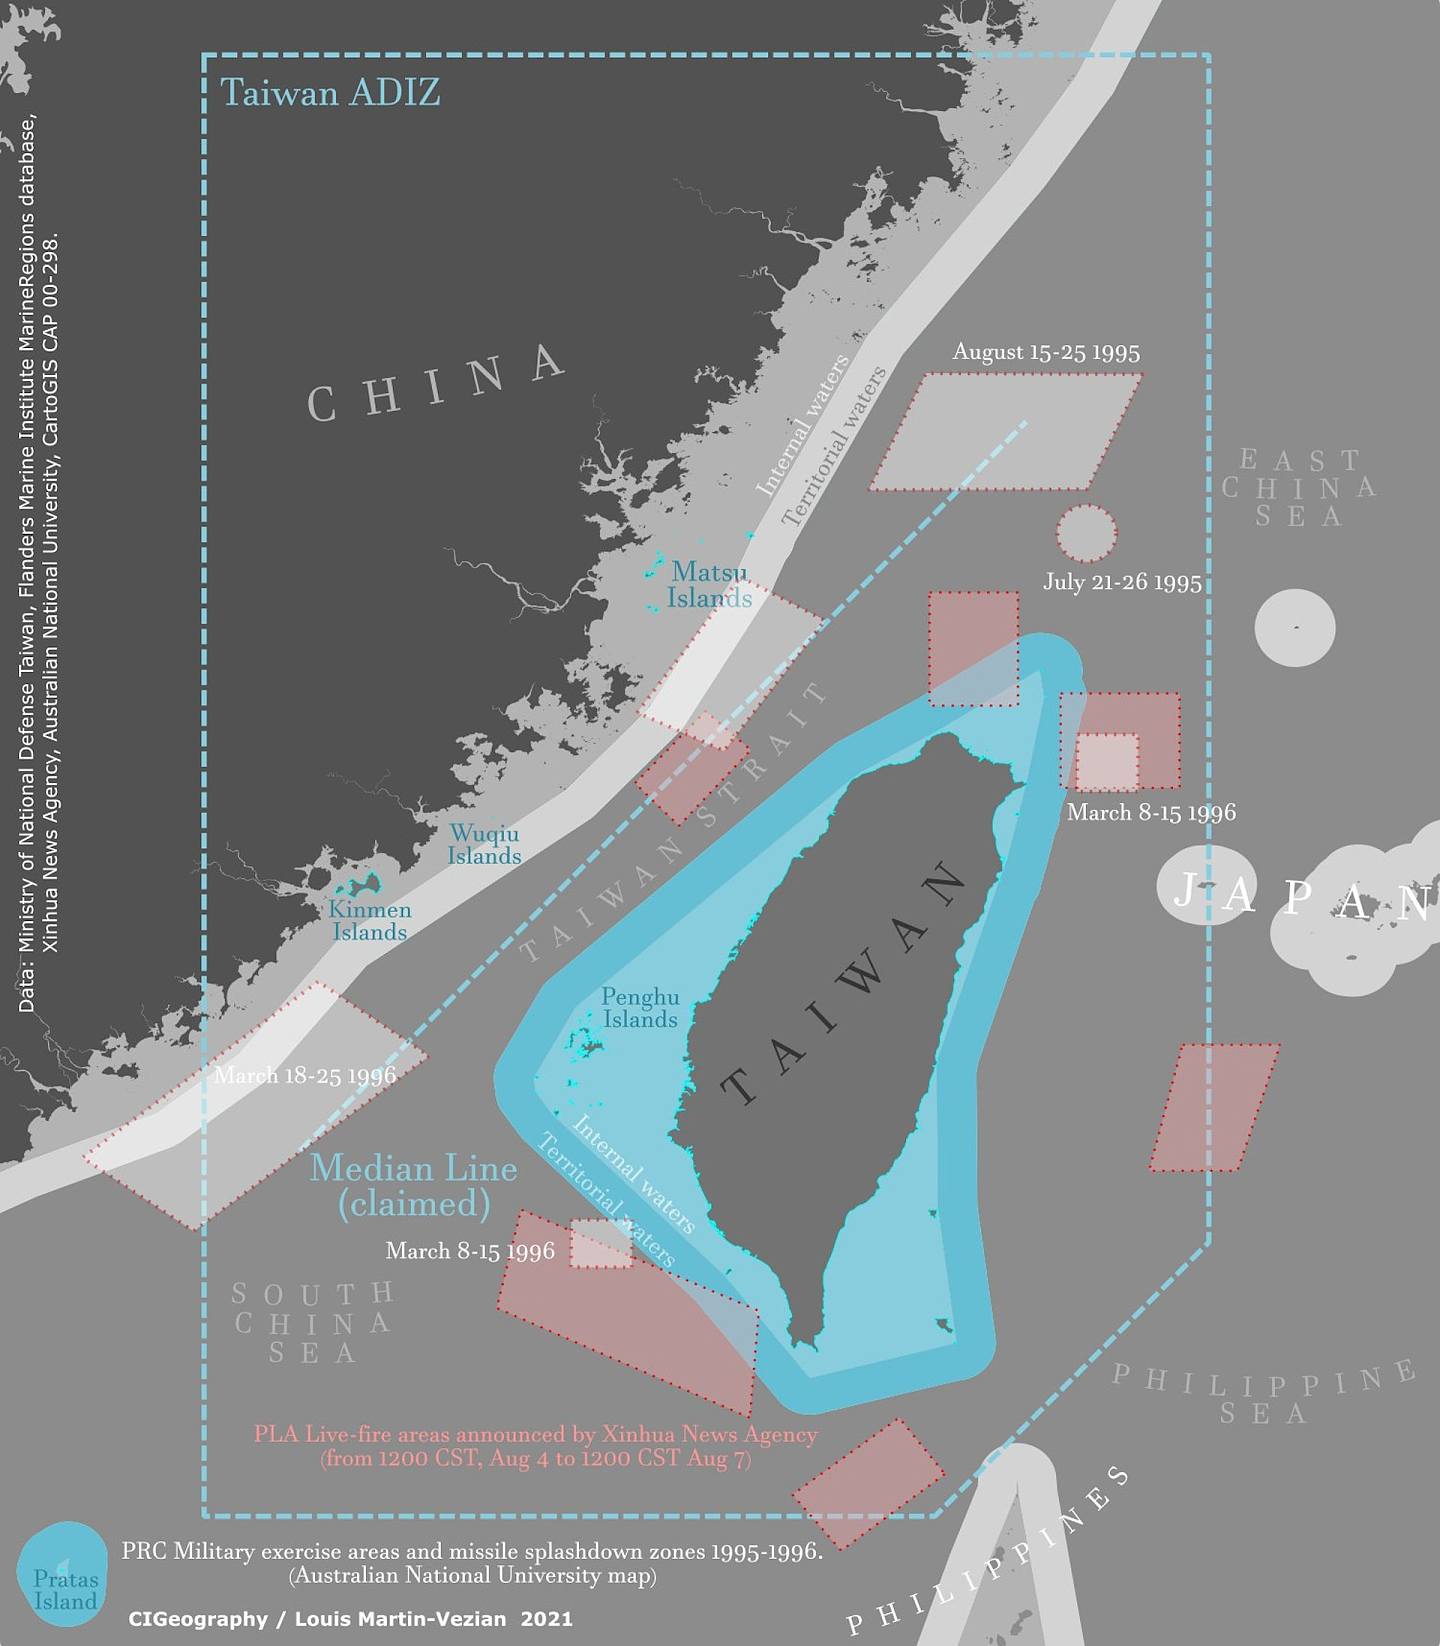 时政与地理网（CIGeography）绘制的地图，显示了解放军将进行的「重要军事演训行动」与「实弹射击」，规模将超越1996年台海危机，甚至跨越了台湾的领海、内水与防空识别区。 （Twitter@CIGeography）